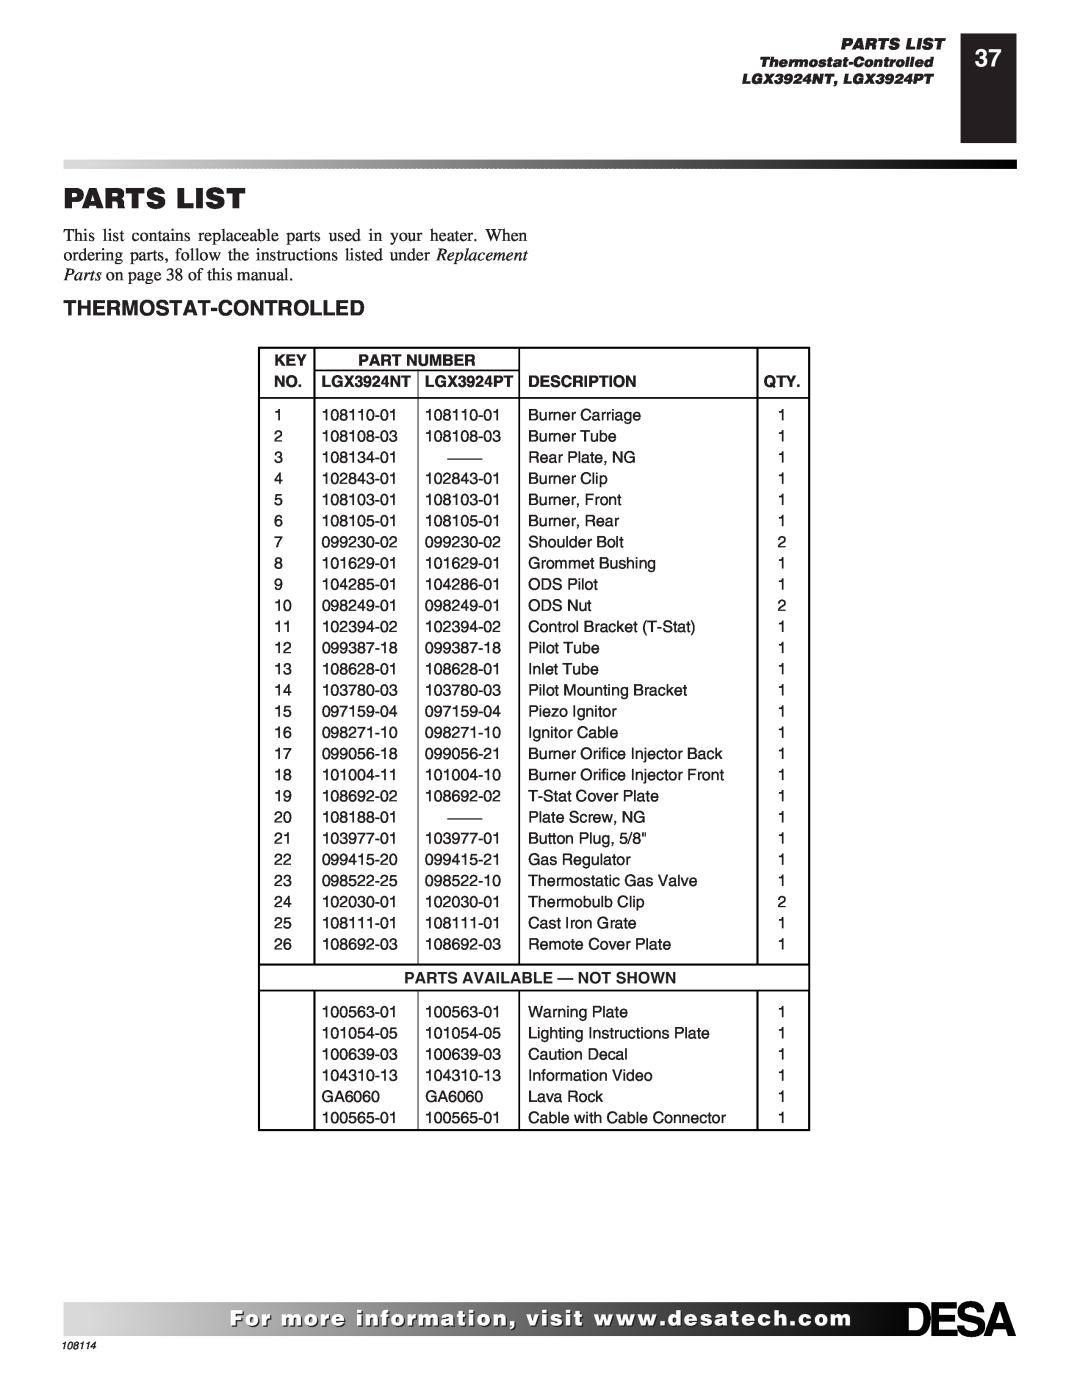 Desa INTERNATIONAL UNVENTED (VENT-FREE) GAS LOG HEATER Parts List, Part Number, LGX3924NT, LGX3924PT, Description 